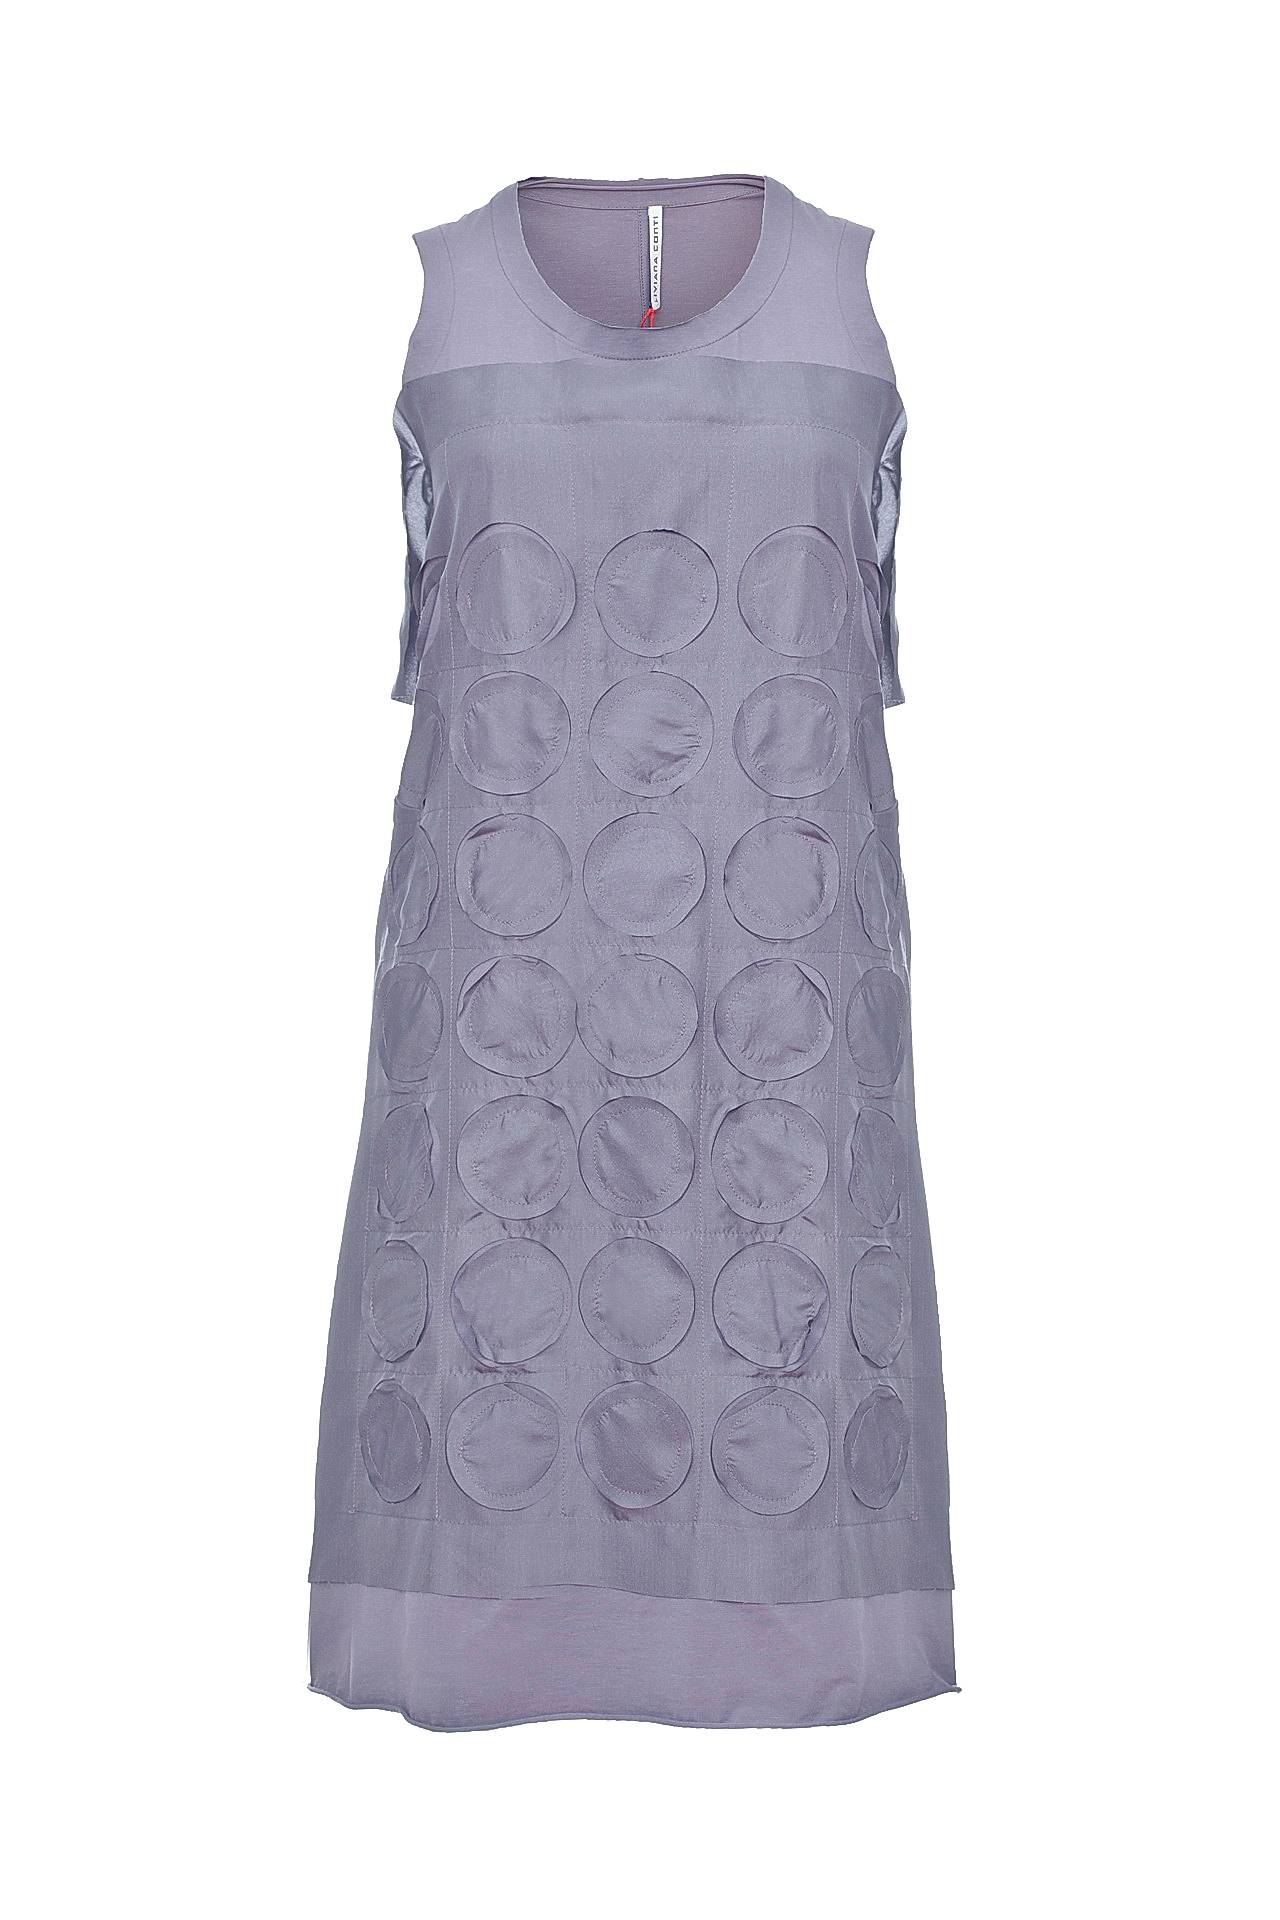 Одежда женская Платье LIVIANA CONTI (F1E847/11.1). Купить за 11450 руб.